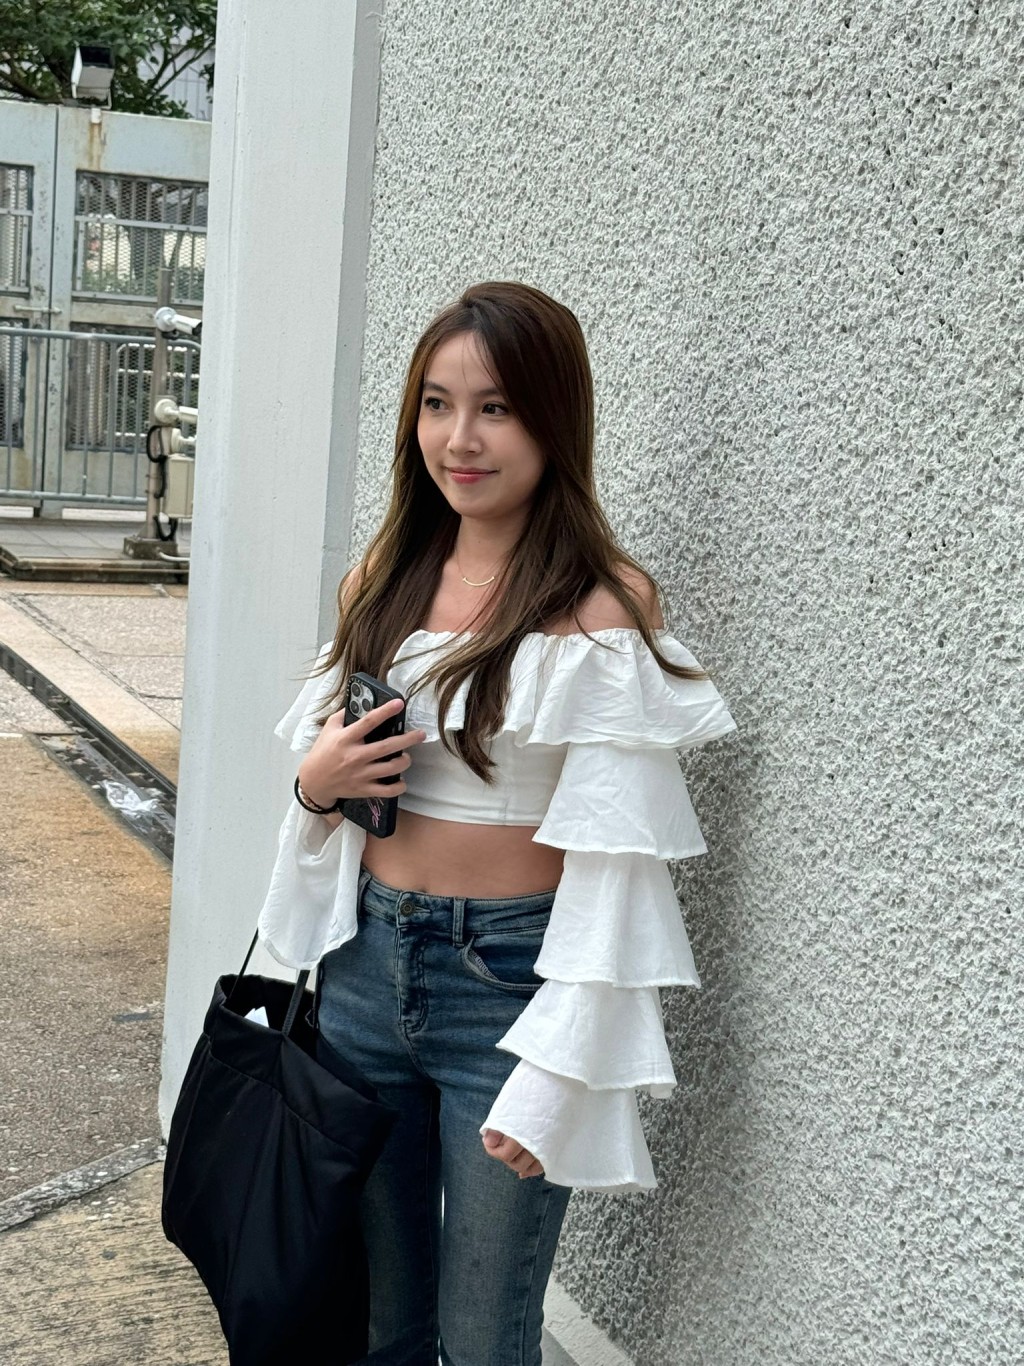 彭芷晴 Anna 23岁，在香港修读机械工程，朋友提名，露小蛮腰。